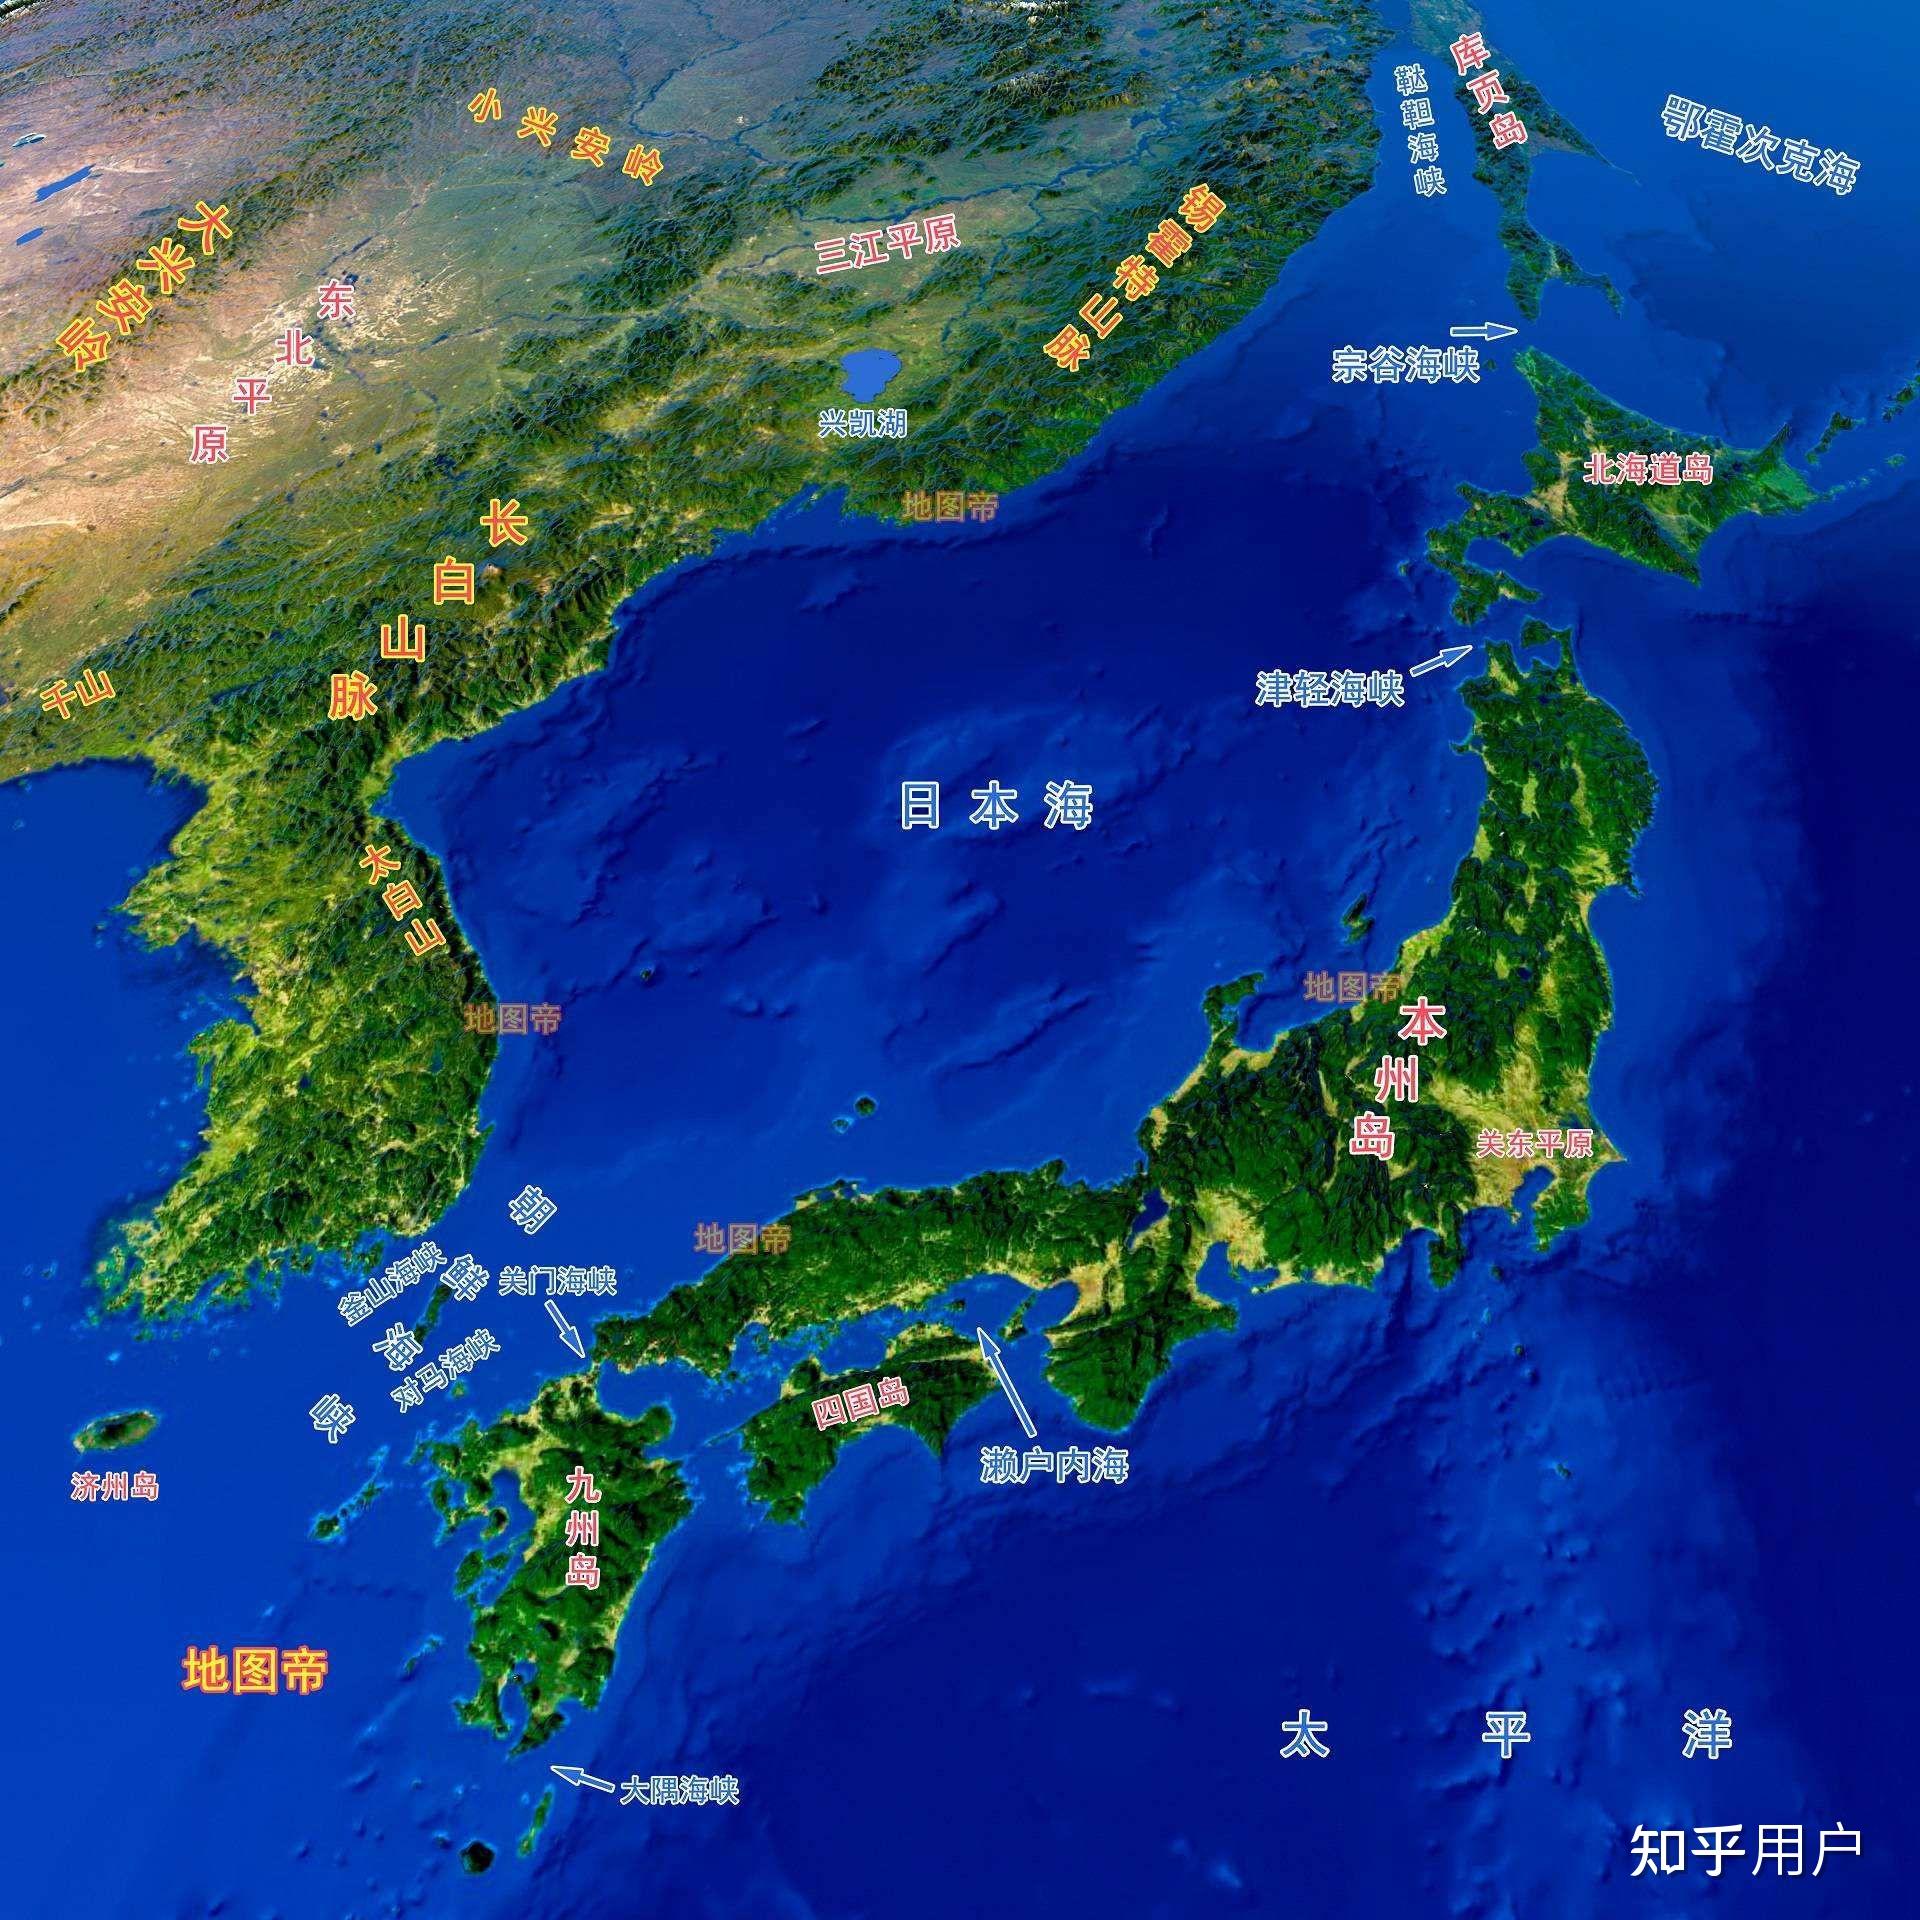 如果日本和美国合并成一个国家,那么这个新国家的领海有多大? 